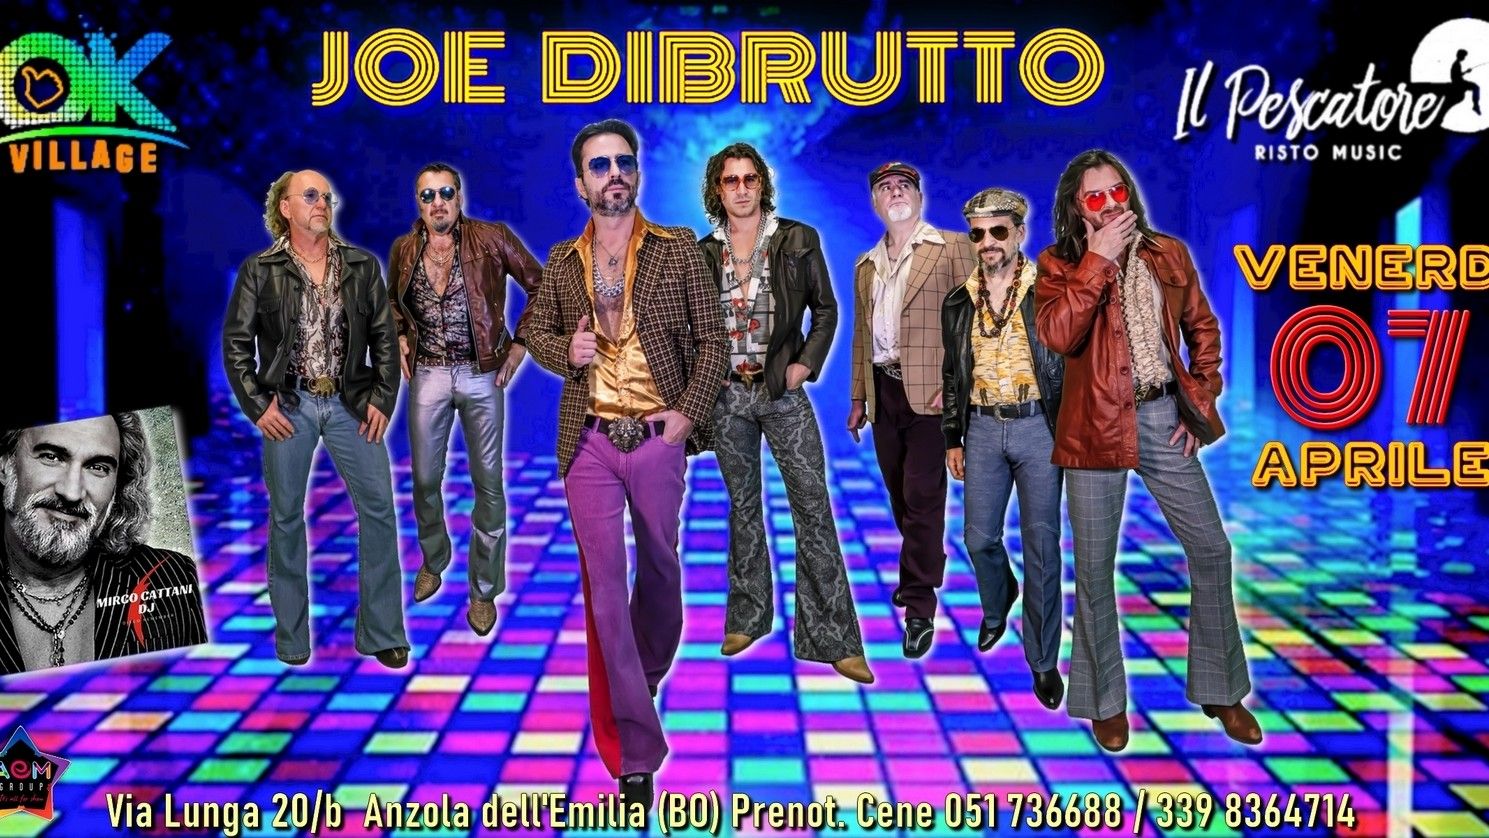 Joe Dibrutto Show